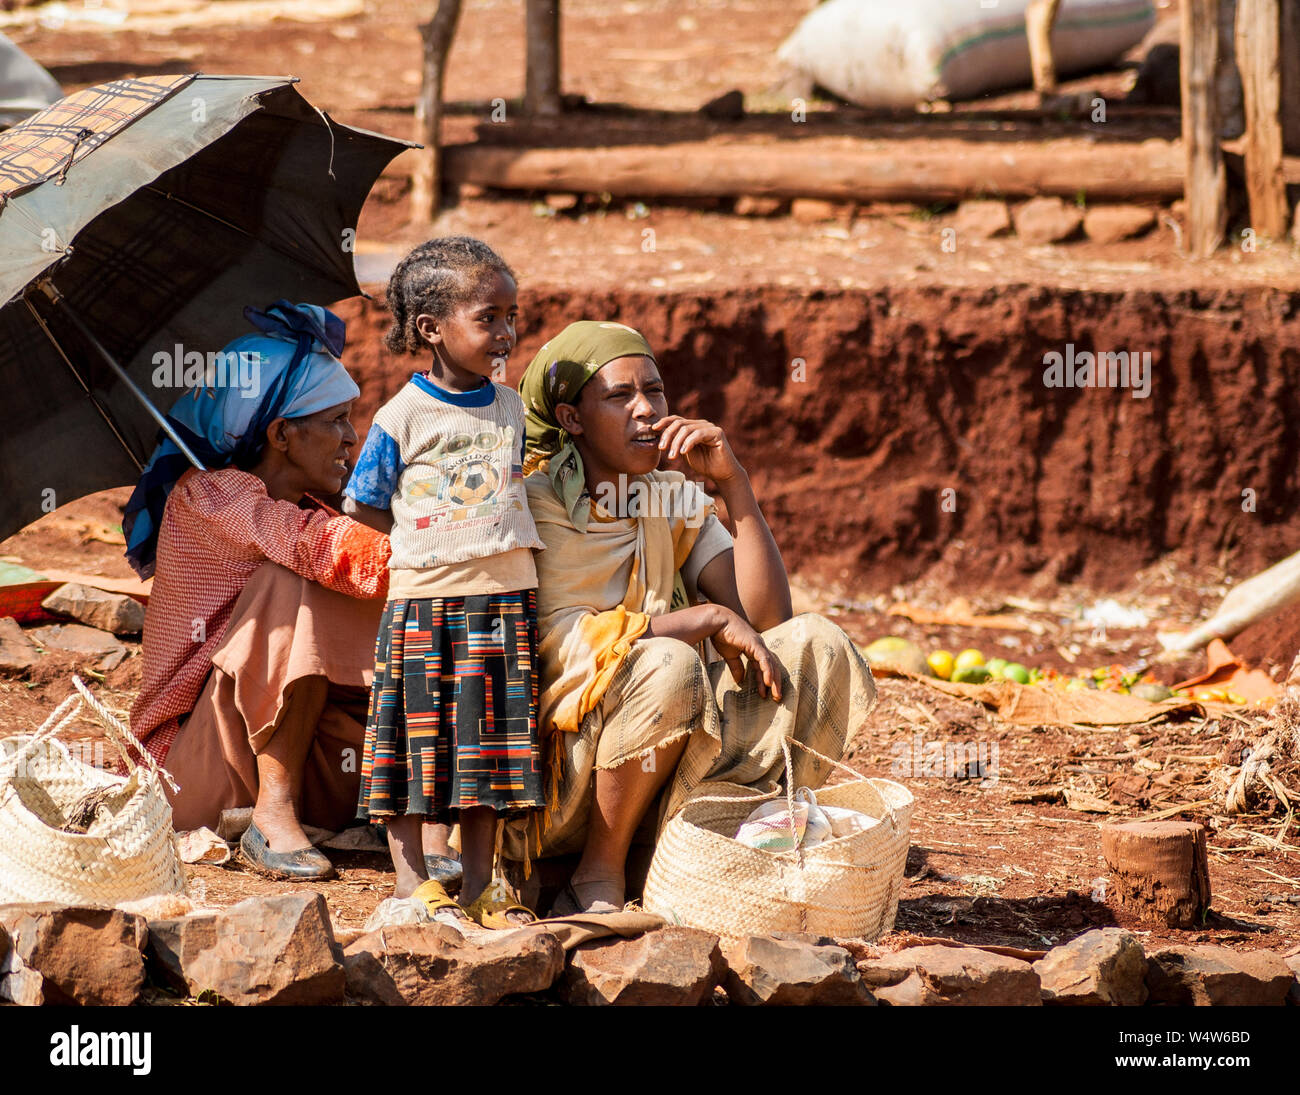 Zwei junge Frauen und ein Kind auf der Suche nach ihrer Produktion in einer ländlichen Markt in Illubabor, Äthiopien Stockfoto